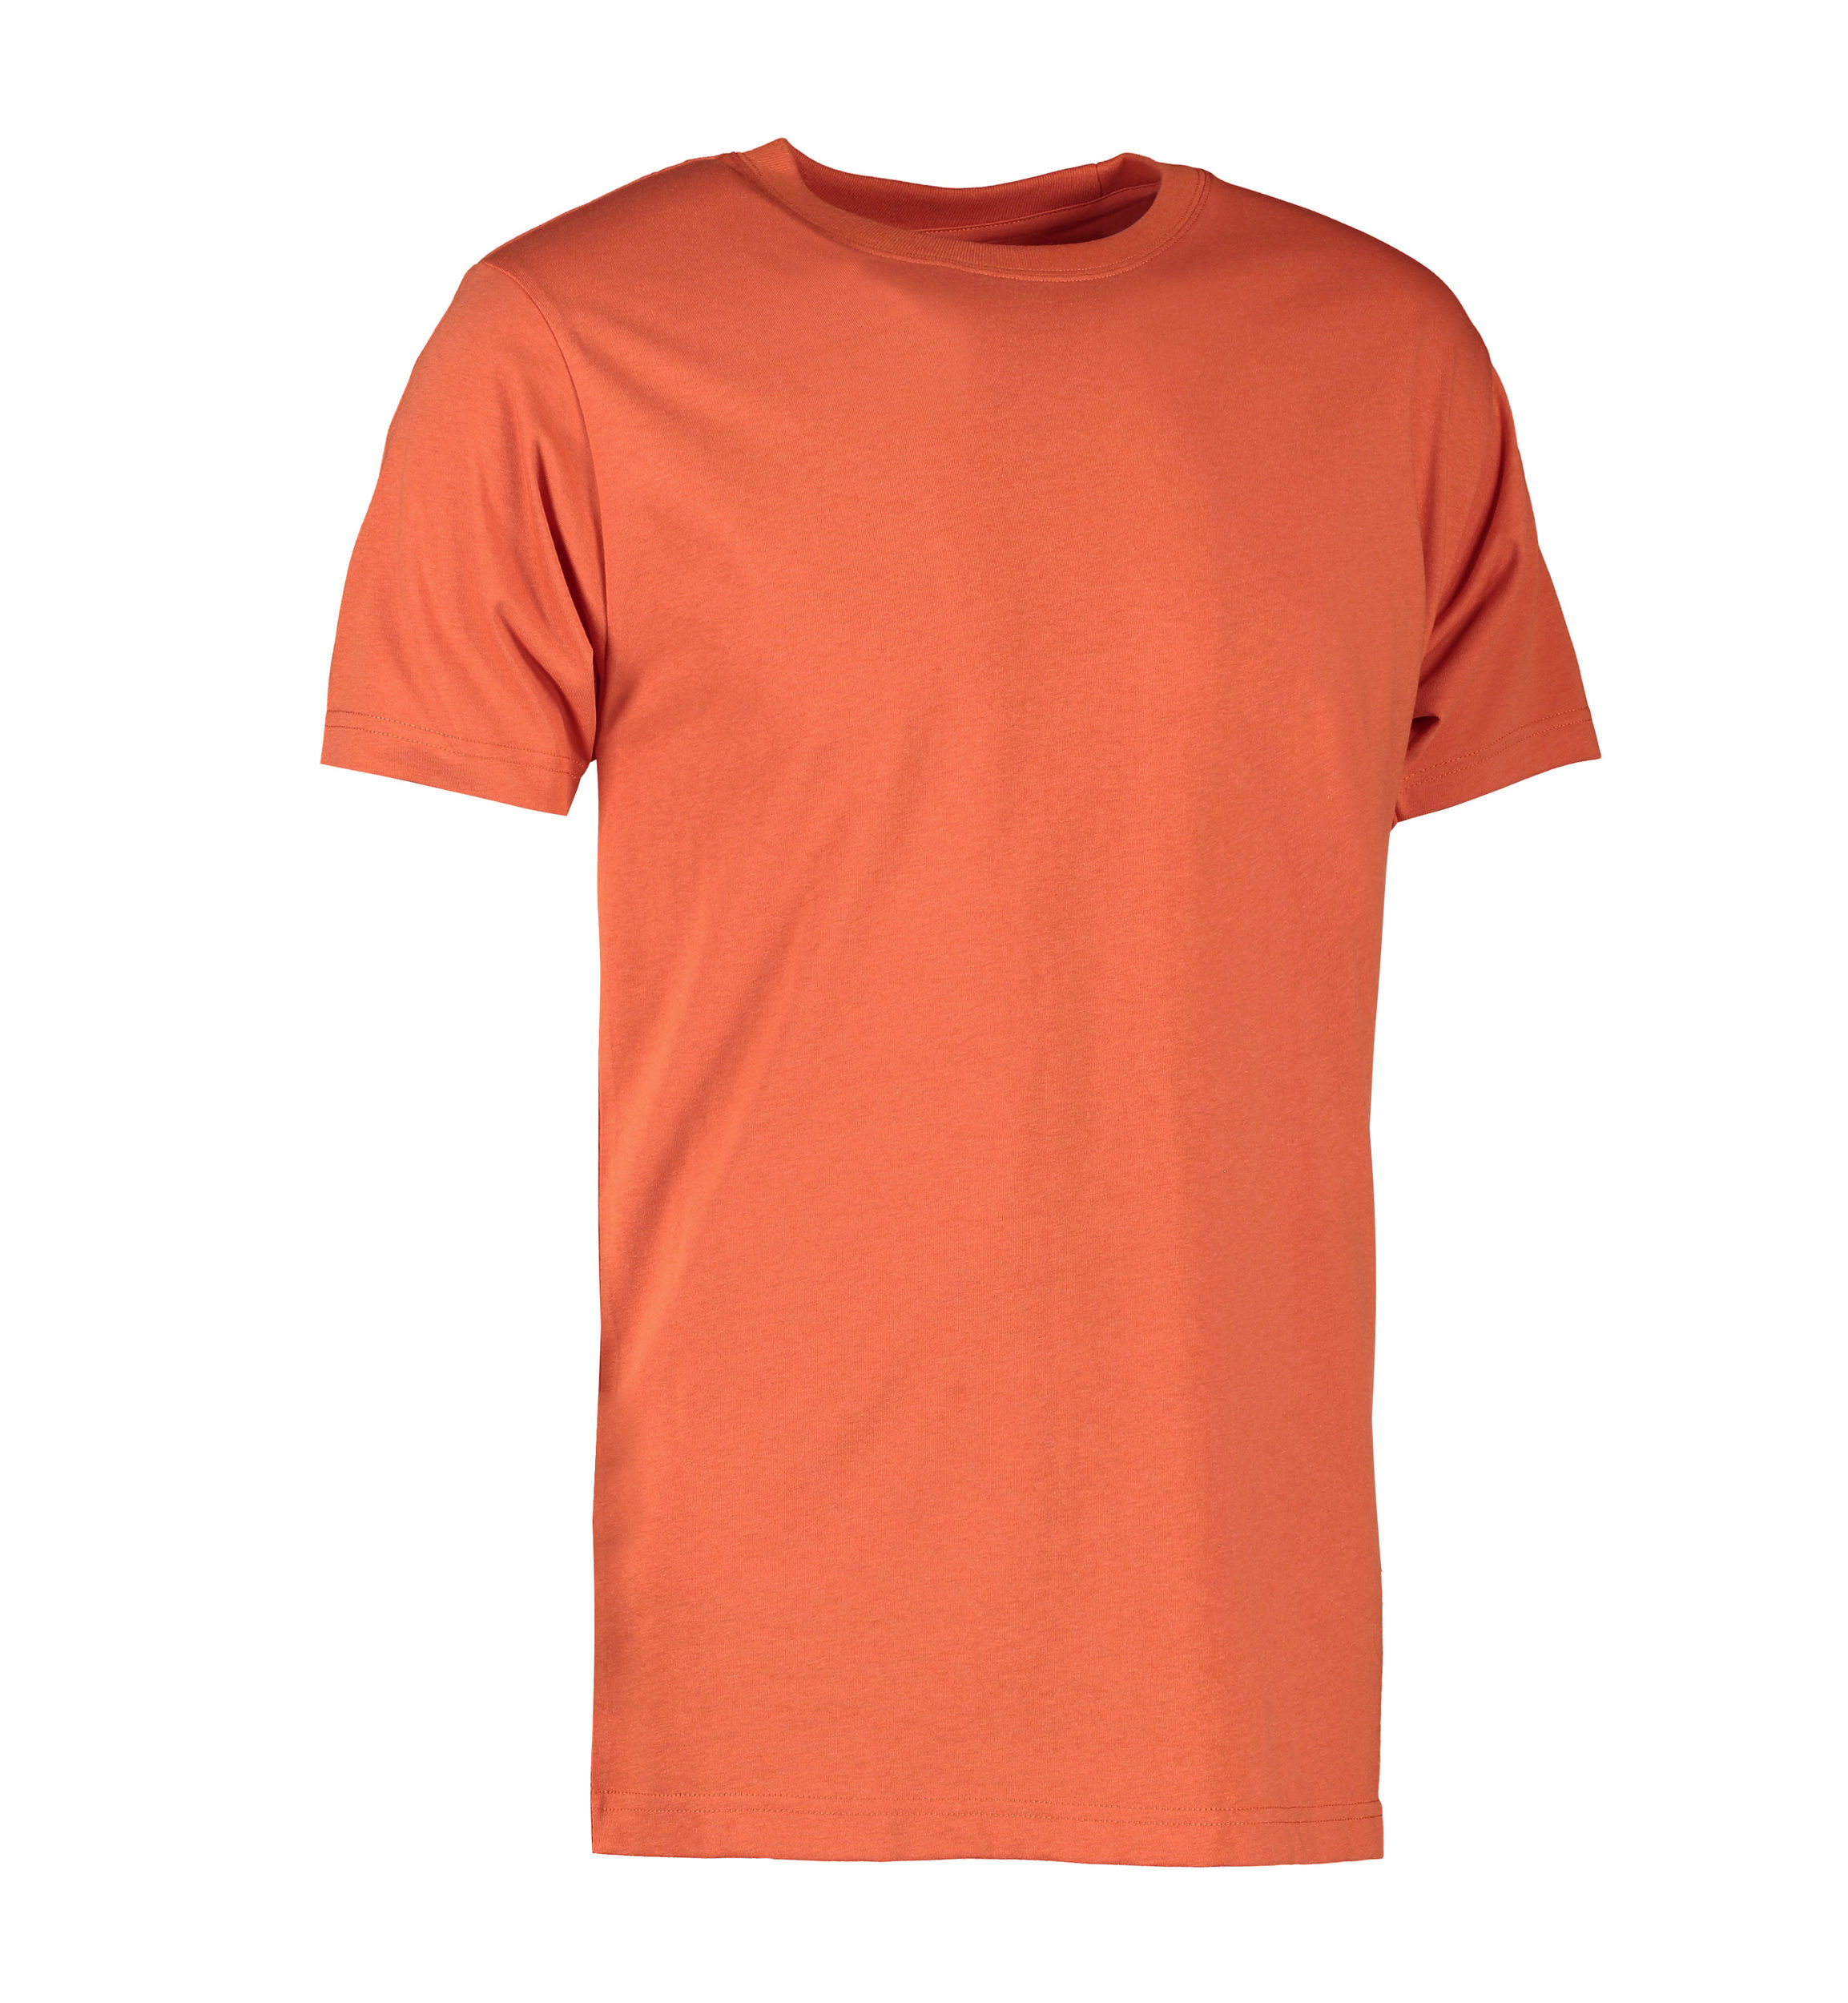 Billede af Koral farvet slidstærk t-shirt til mænd - 3XL hos Sygeplejebutikken.dk